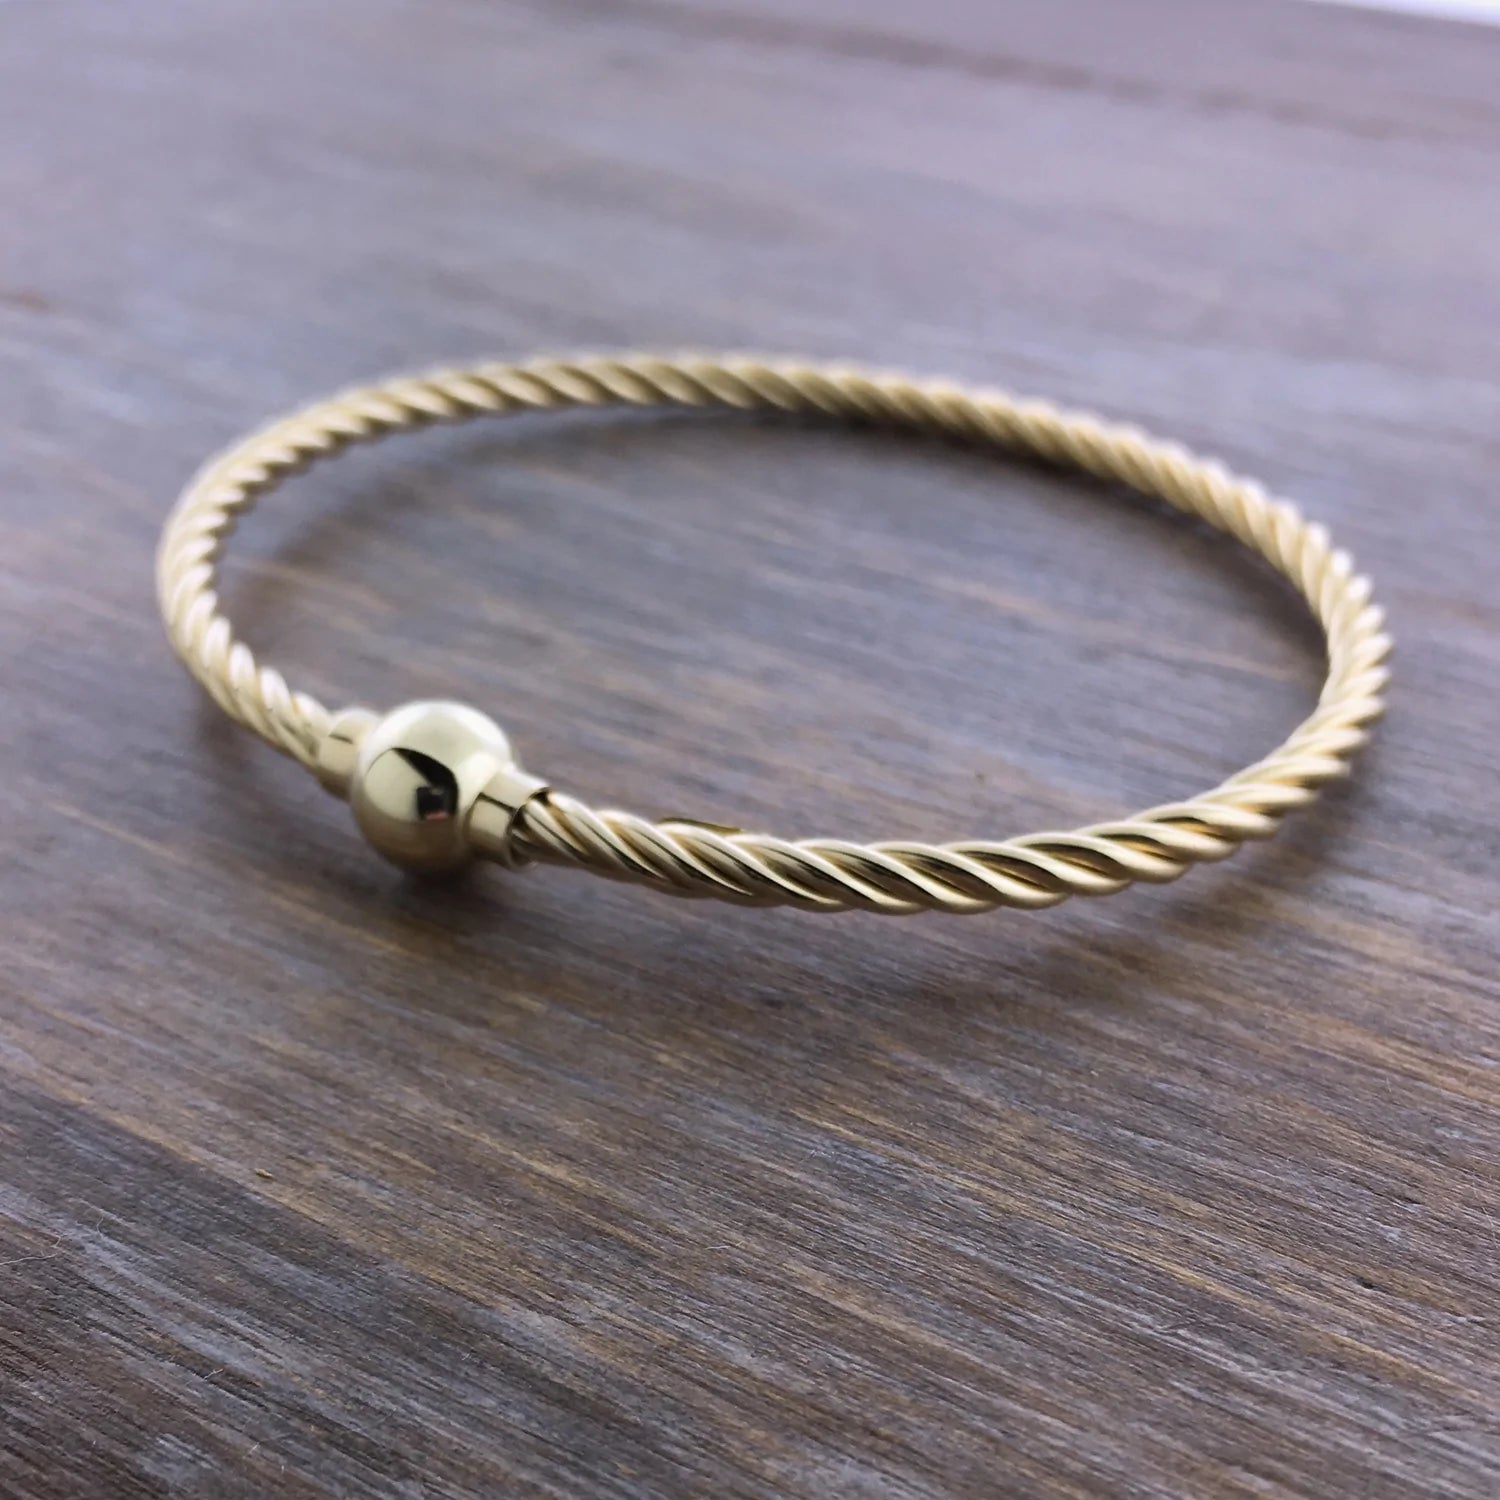 Rose Gold Cape Cod Cuff Bracelet